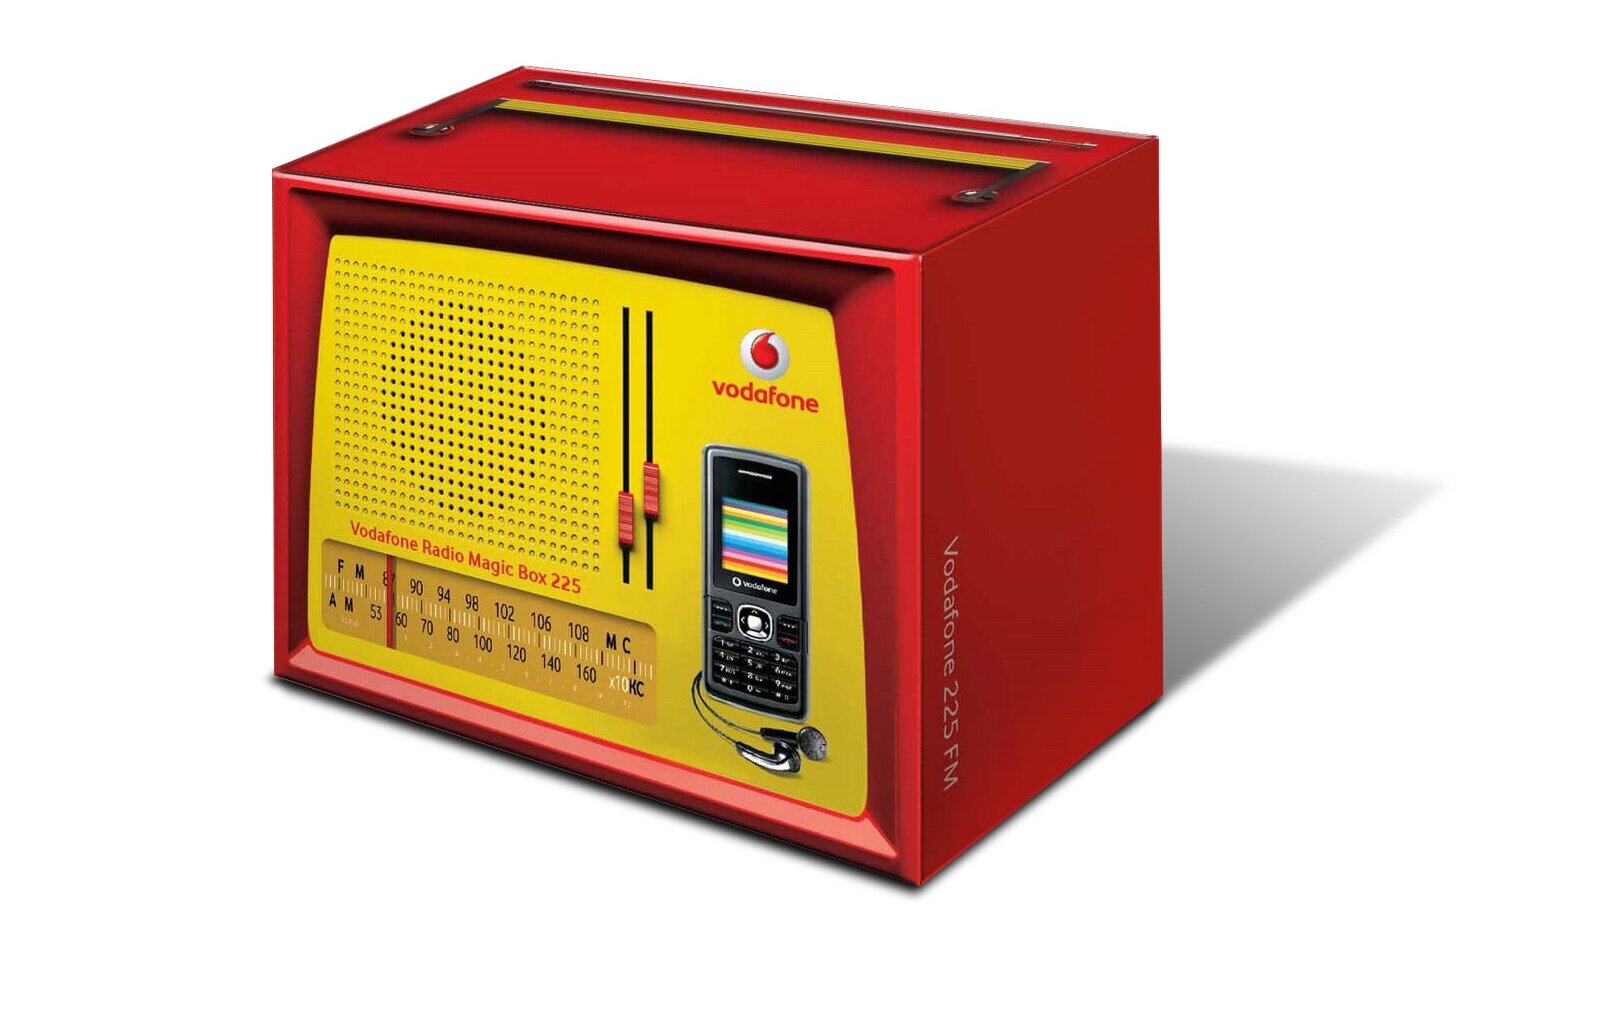 Vodafone  Radio Magic Box 225 — Bhakti Pathak